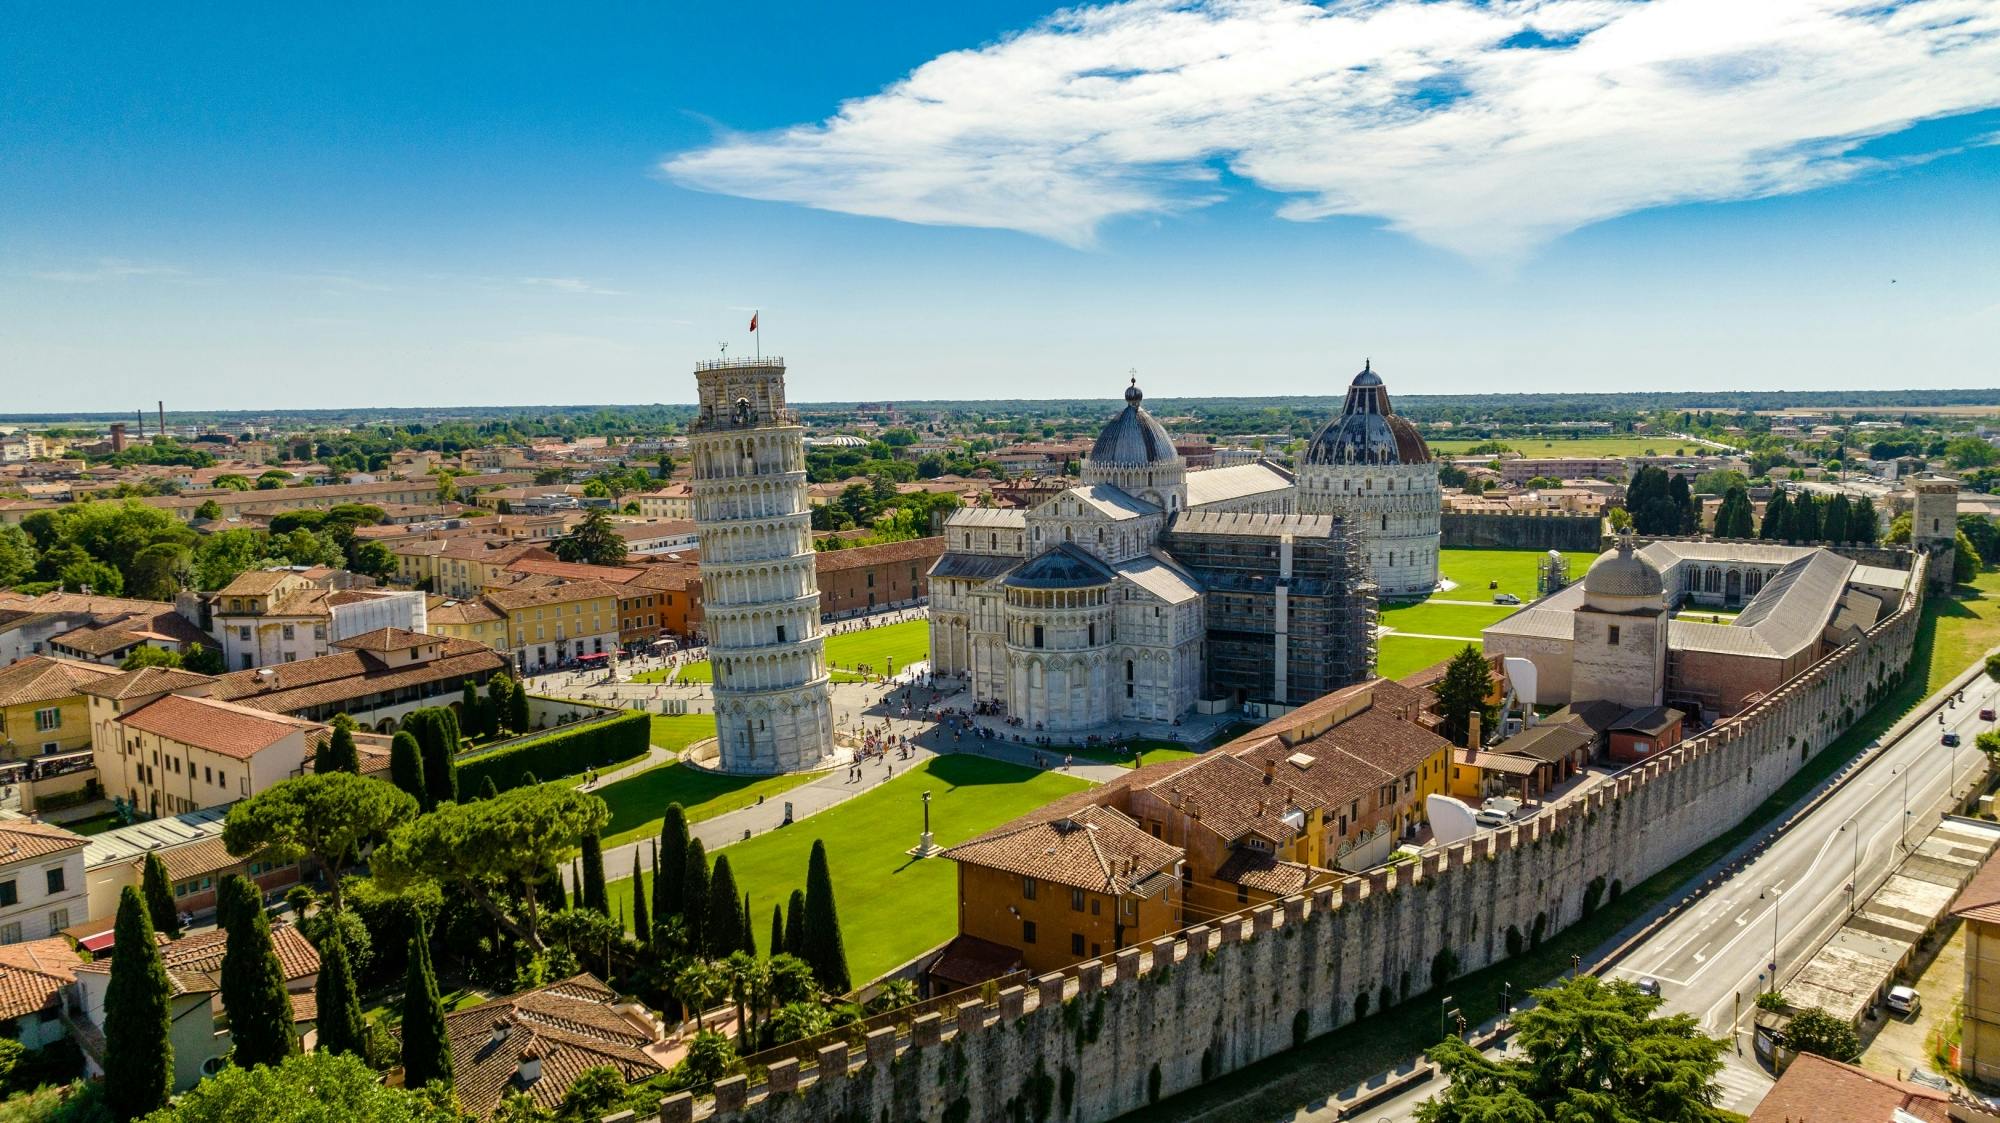 Visita guiada al baptisterio y a la catedral con Torre de Pisa opcional